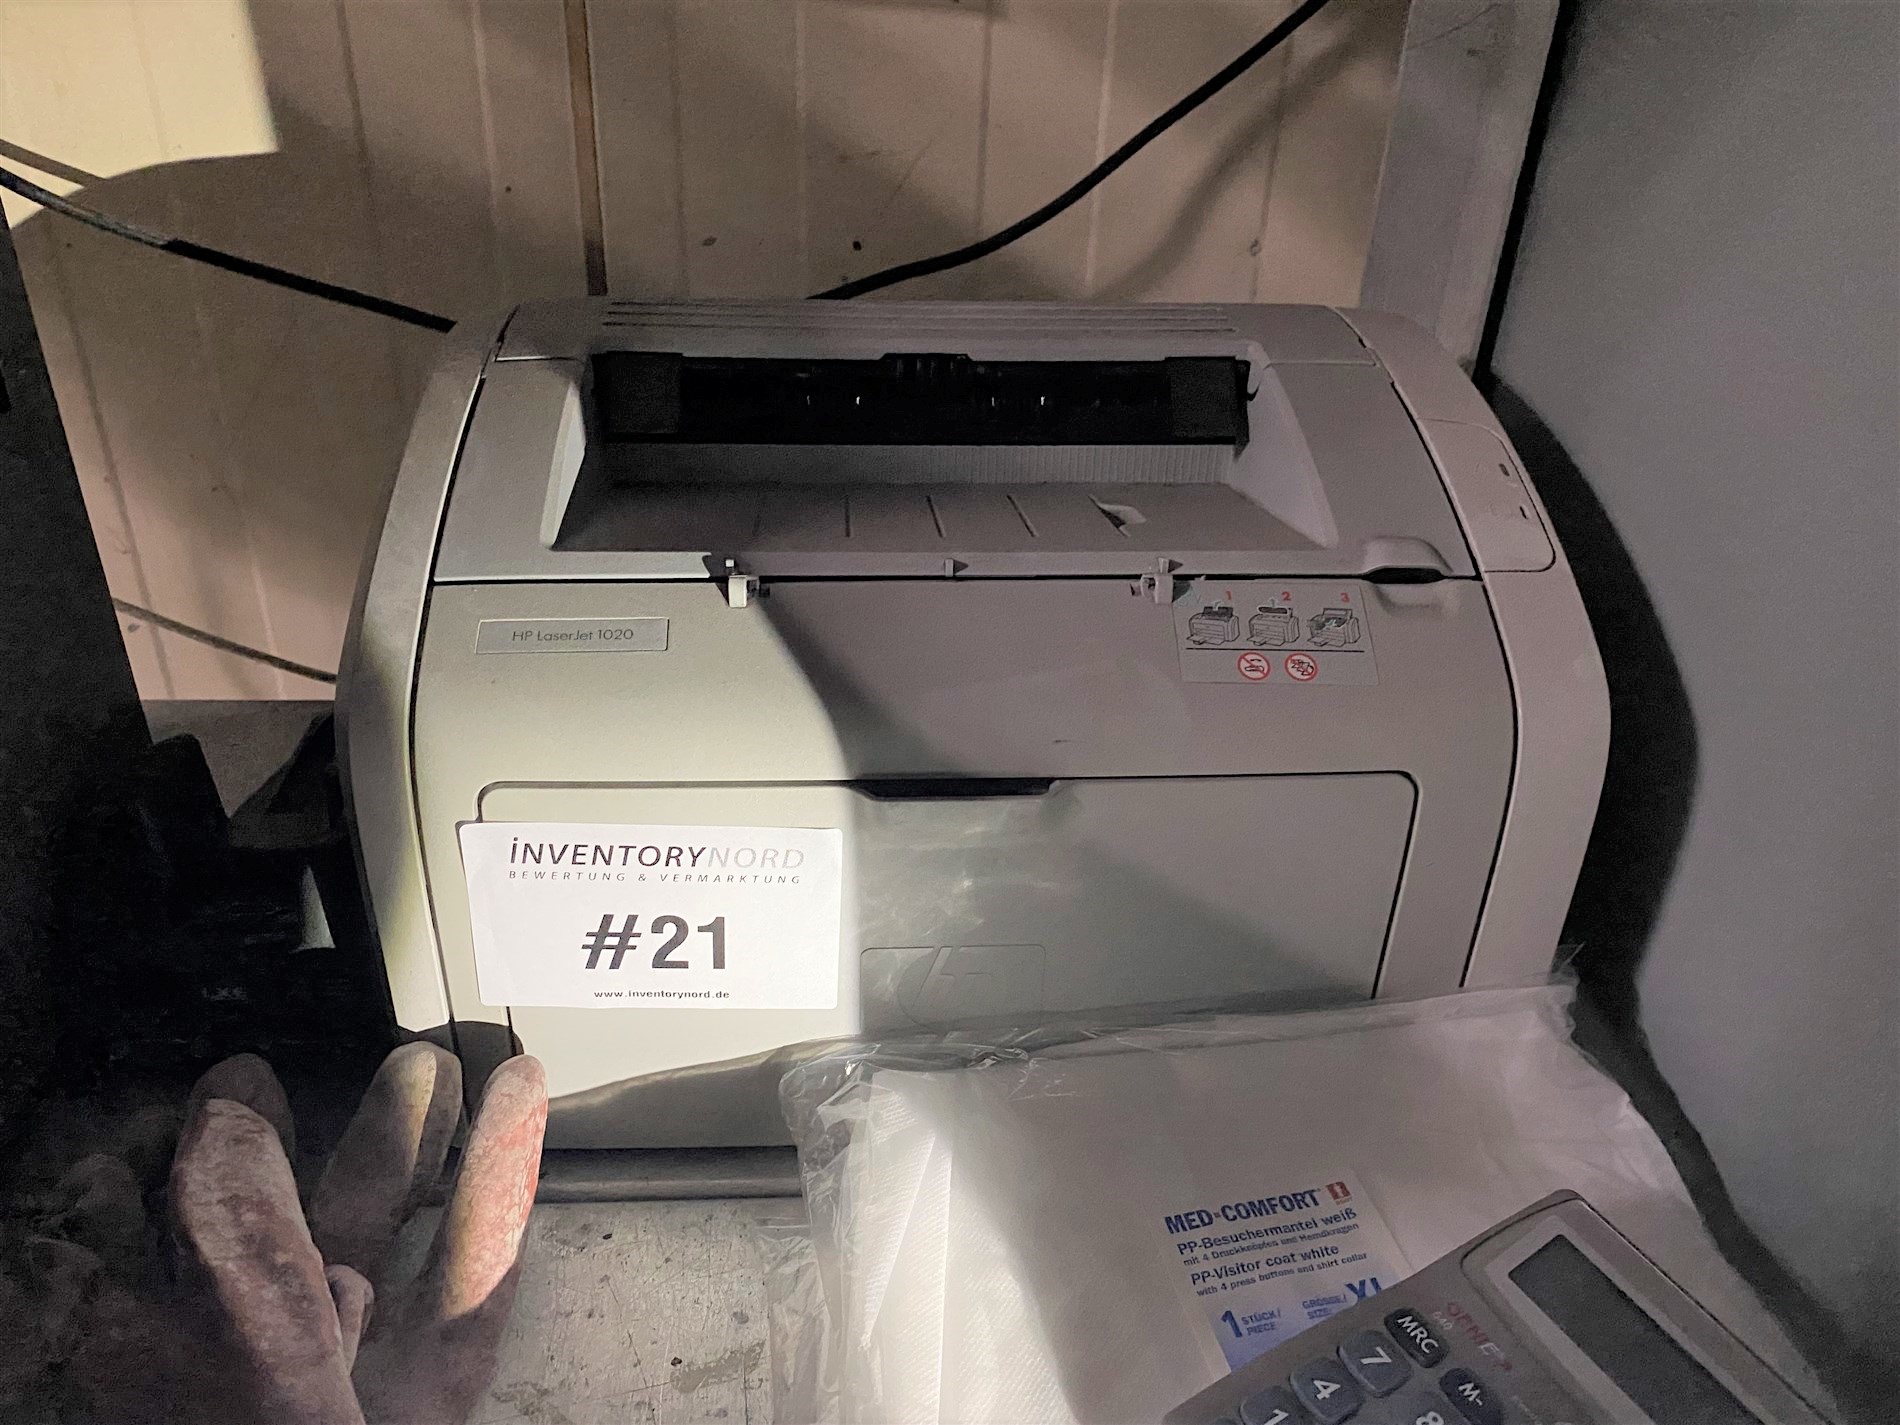 1 Drucker HP LaserJet 1020